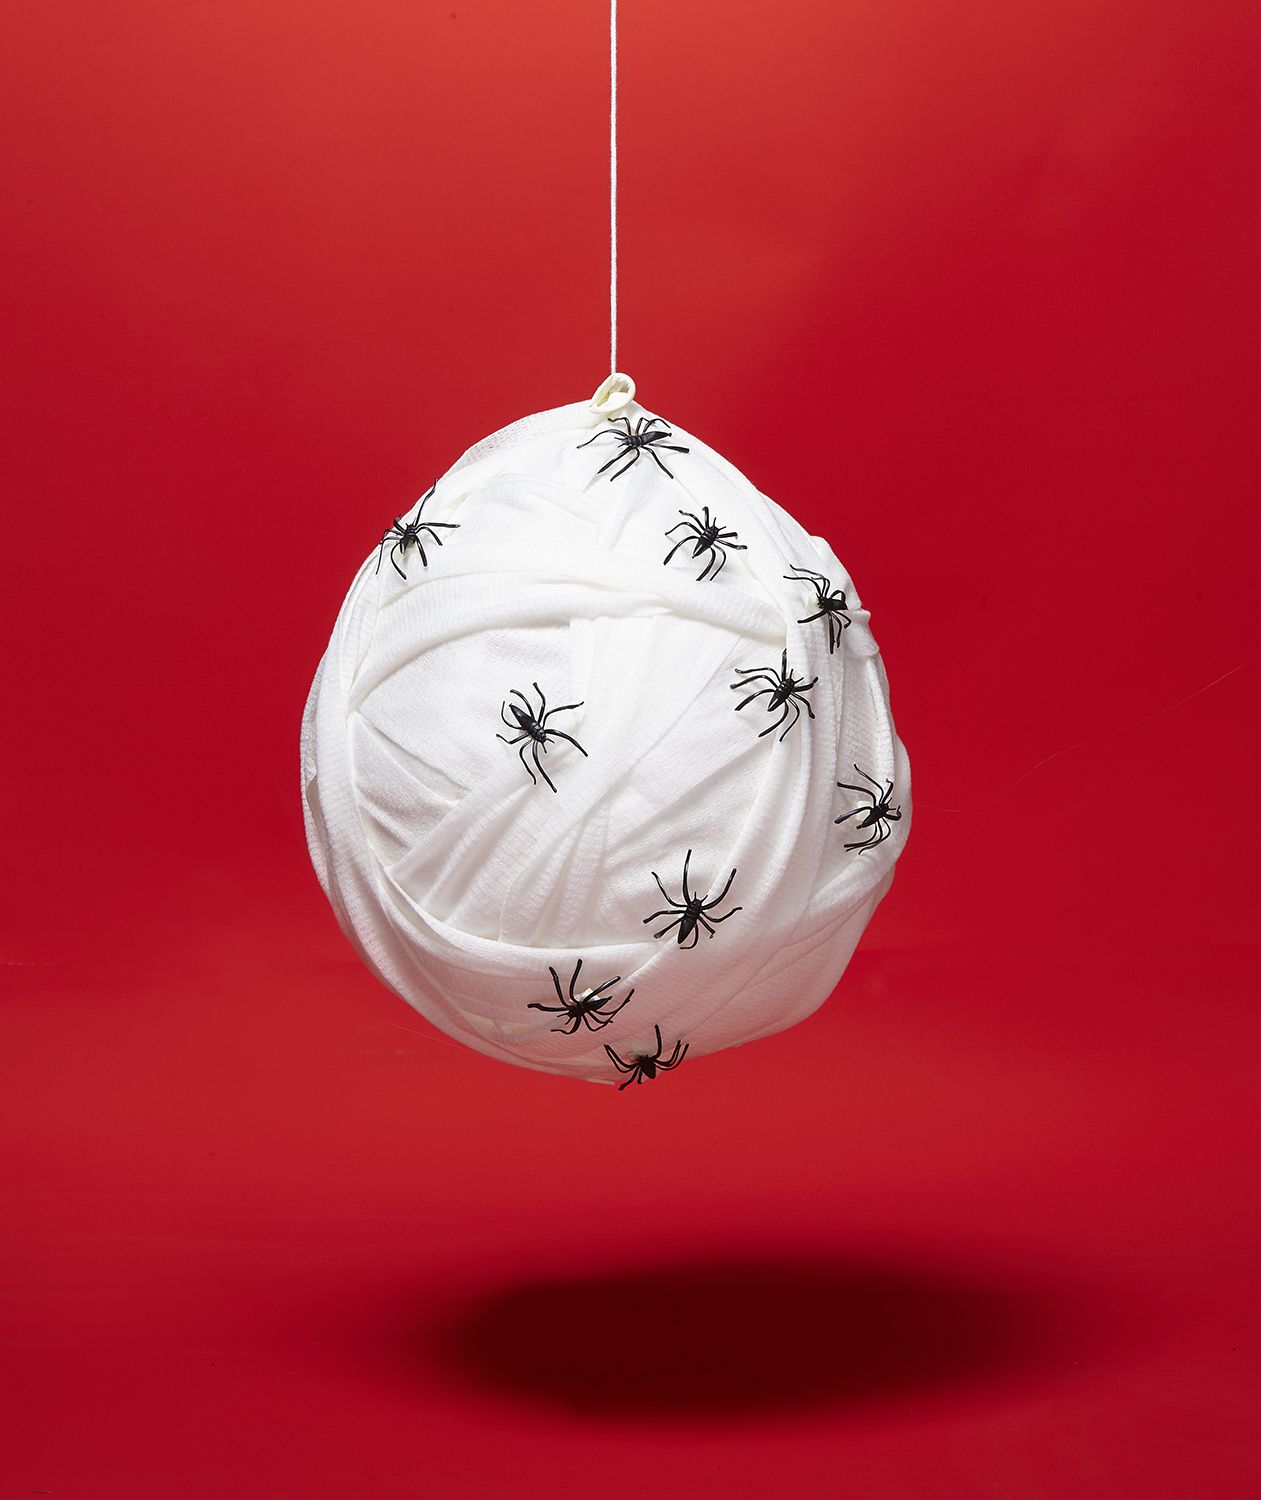 DIY Halloween-sisustusideat: Hämähäkinpesä valmistettu riisillä täytetystä ilmapallosta, joka on kääritty sideharsoon